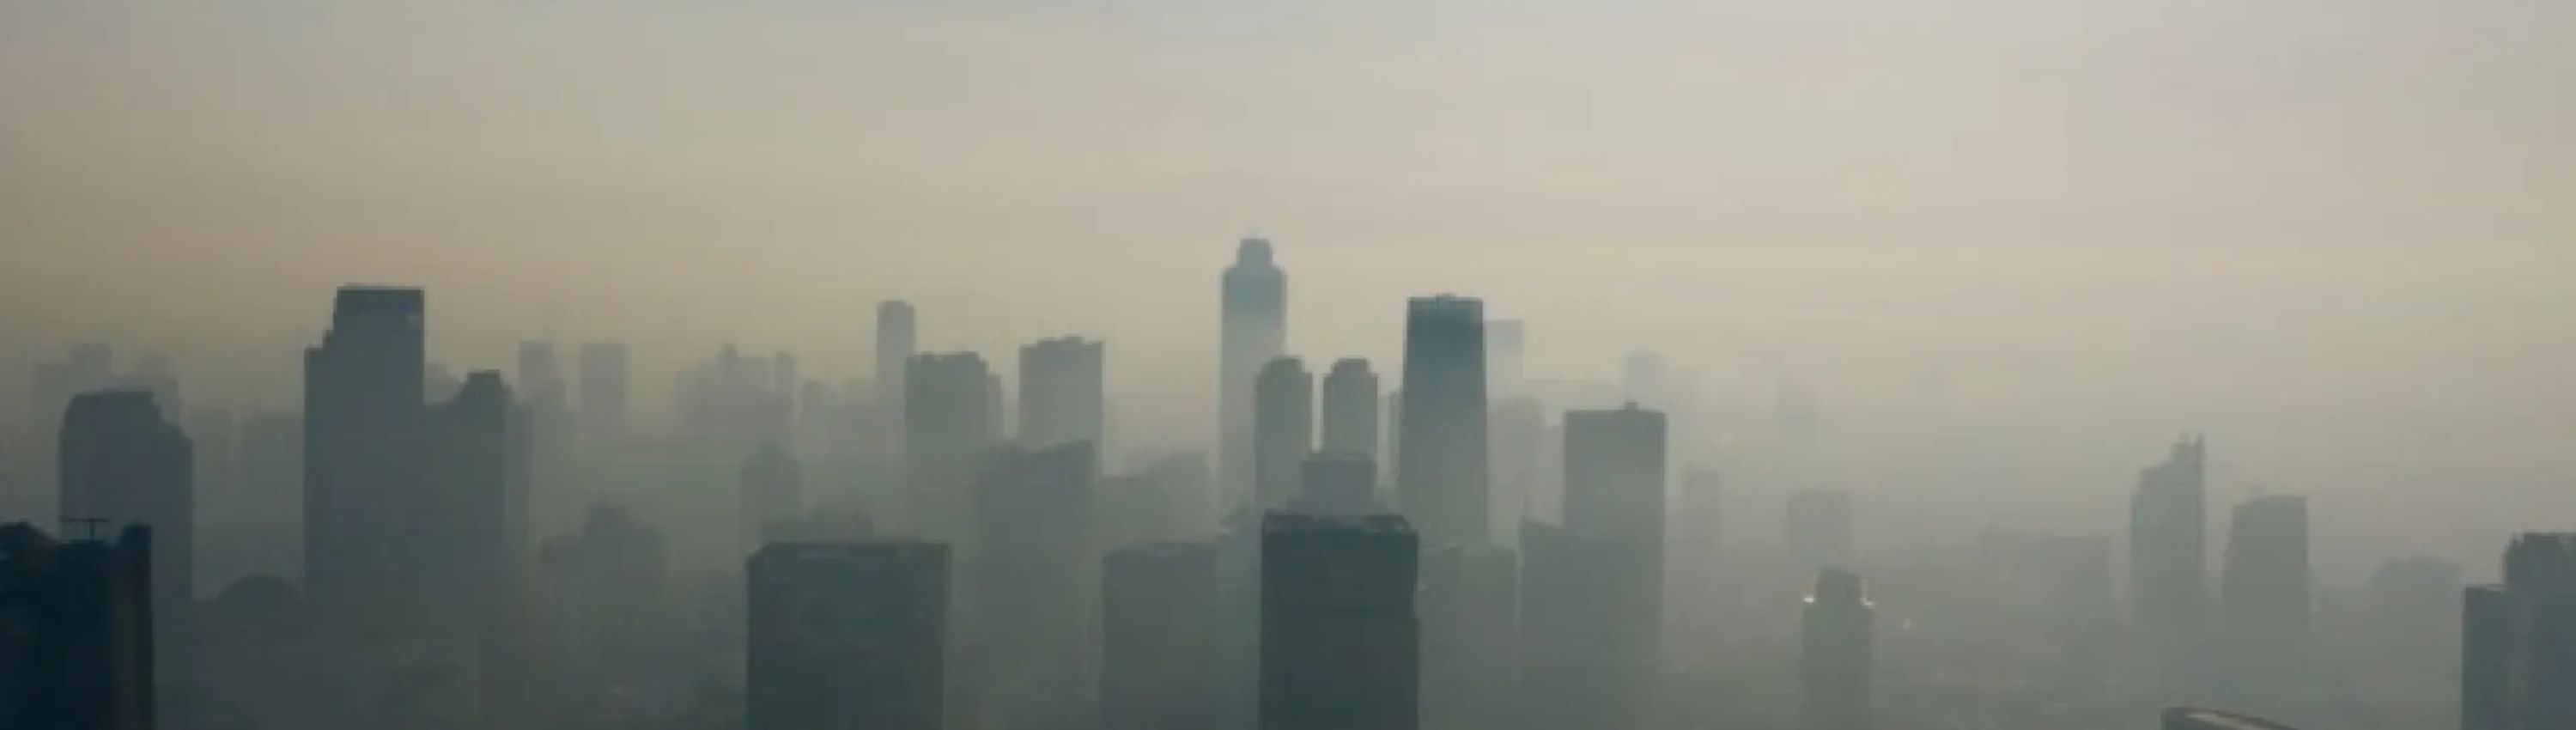 A polluted city skyline